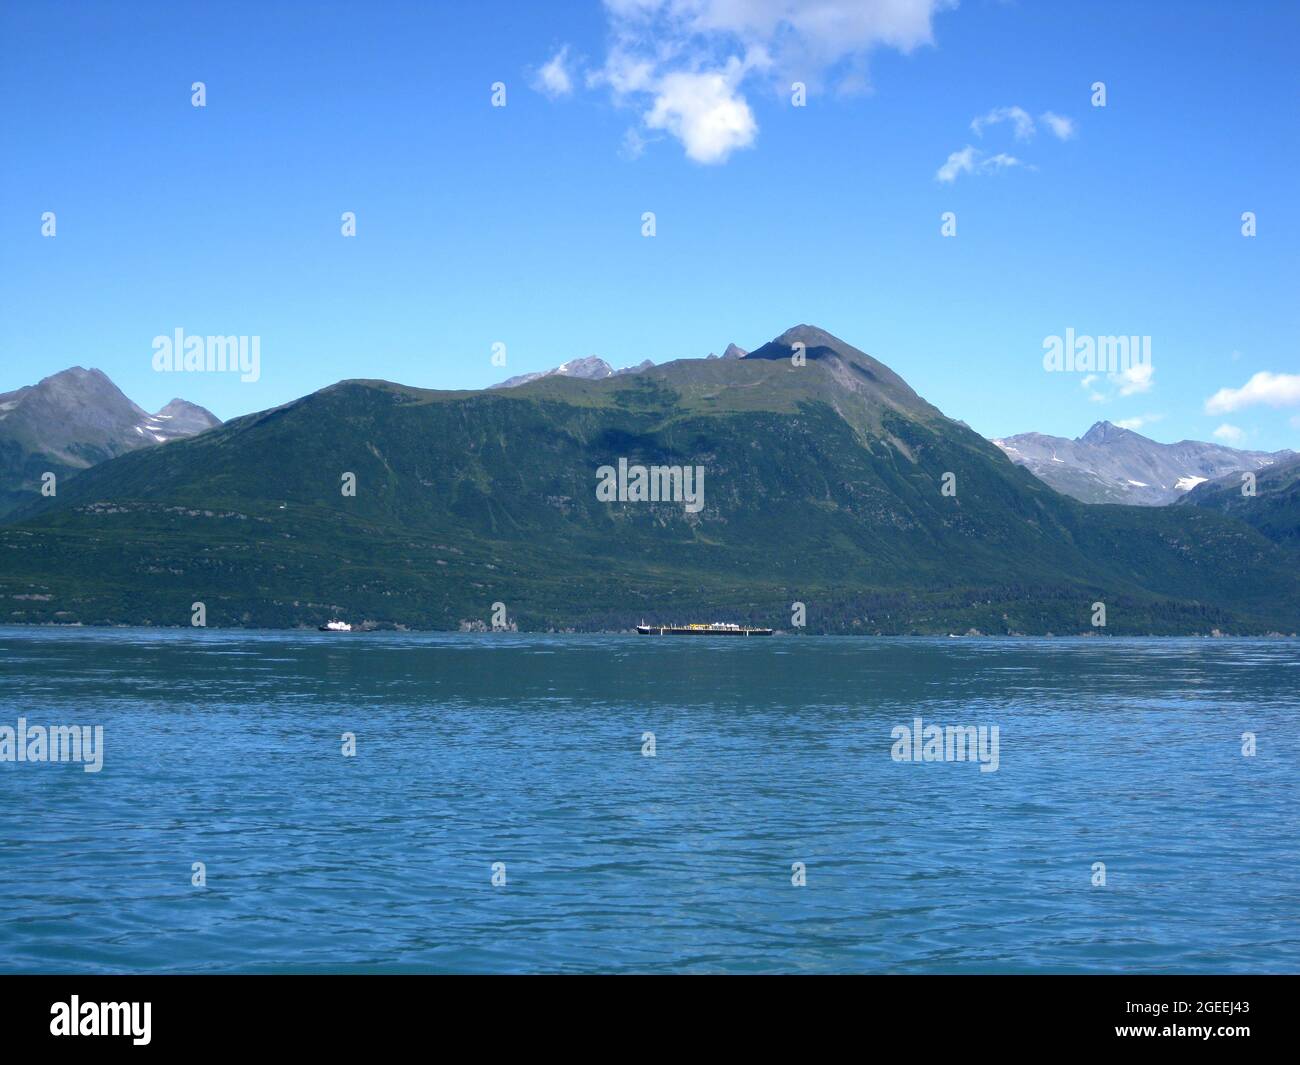 Deux bateaux partent vers le port sur la baie de Valdez, en Alaska. D'immenses chaînes de montagnes se profilent en arrière-plan. Banque D'Images